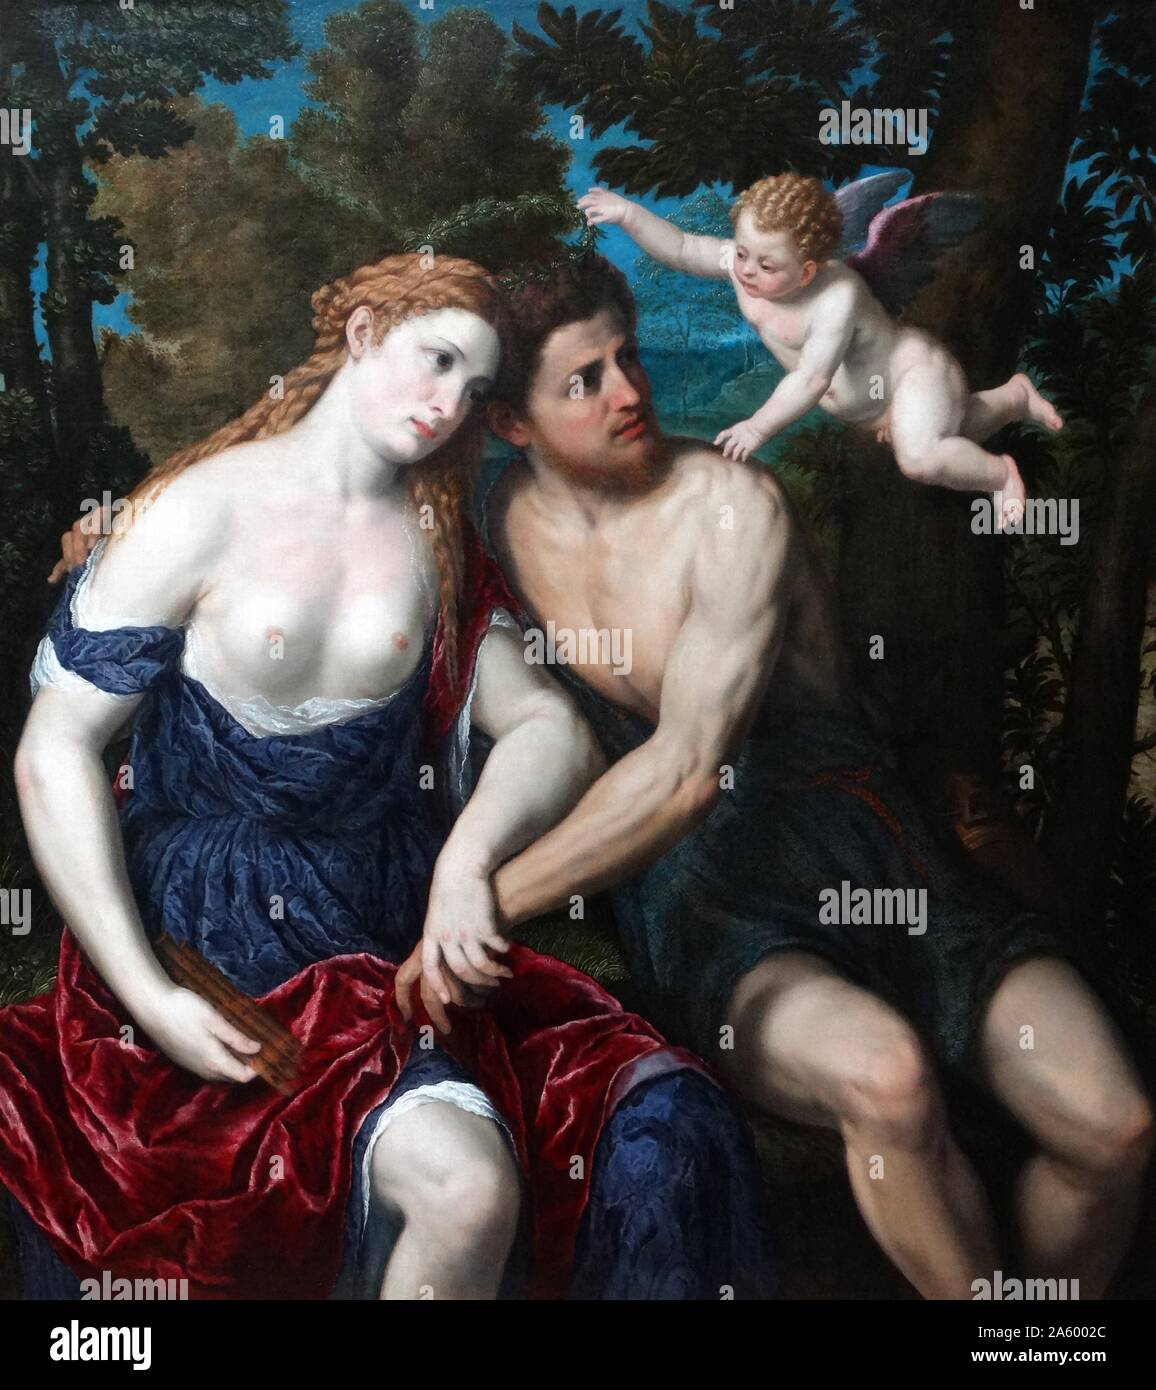 Gemälde mit dem Titel "A Pair of Lovers" von Paris Bordone (1500-1571), italienischer Maler der venezianischen Renaissance. Datiert aus dem 16. Jahrhundert Stockfoto